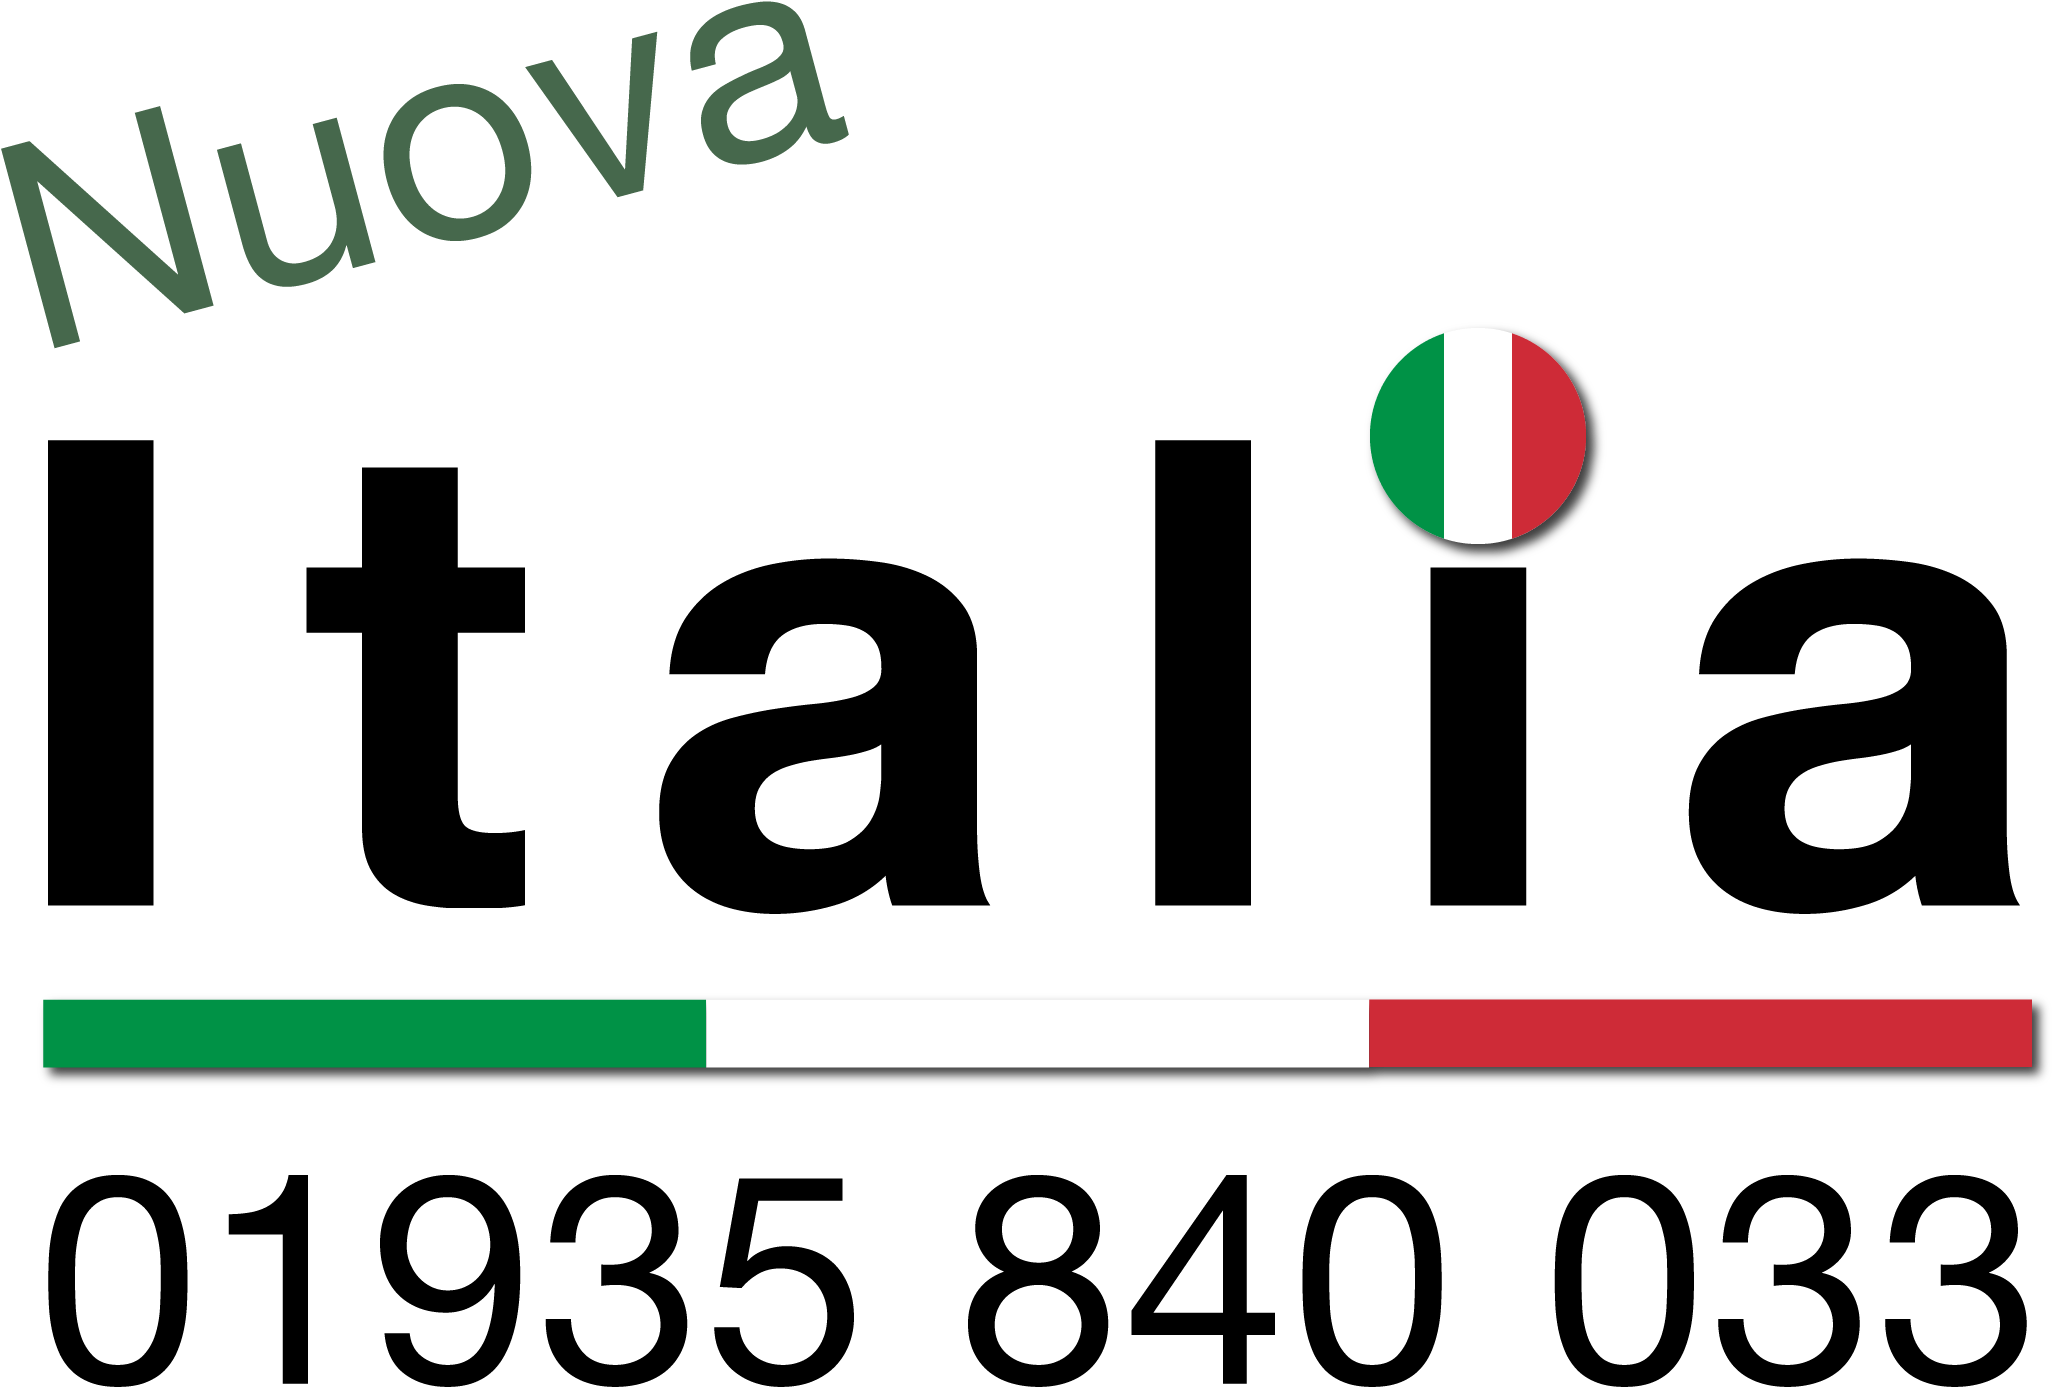 Nuova Italia - Italy (2124x1484)